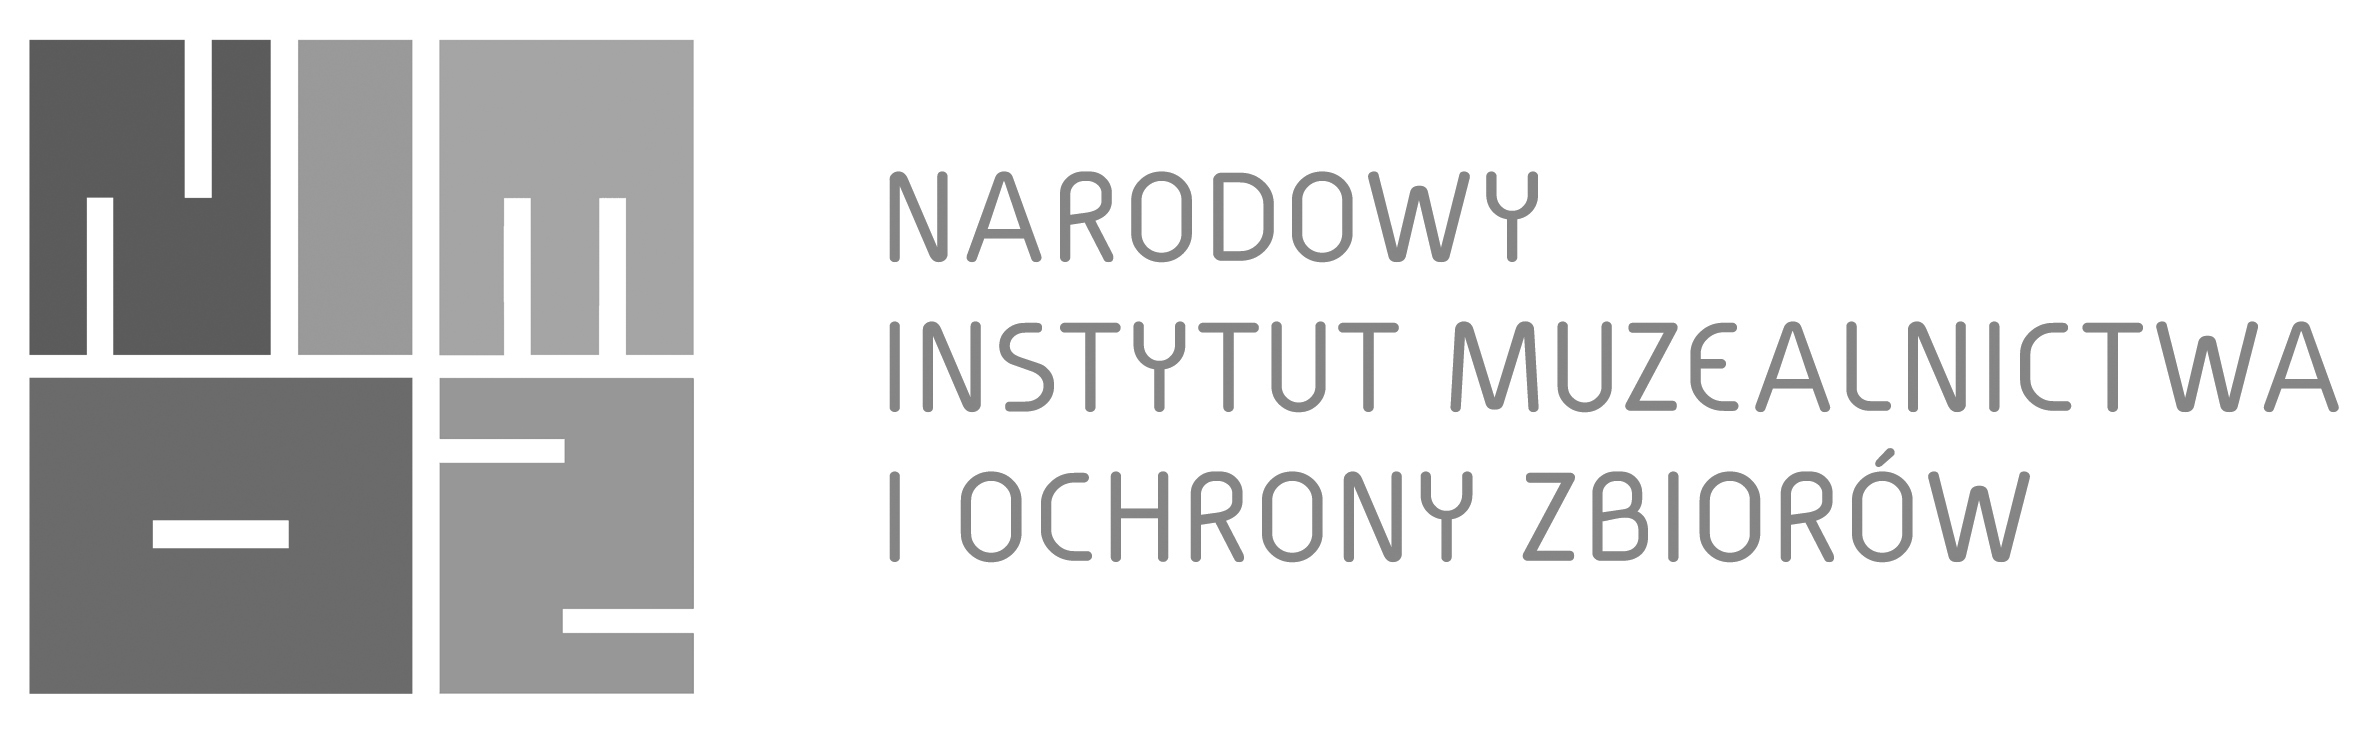 Logotyp Narodowego Instytutu Muzealnictwa i Ochrony Zbiorów - wersja szara. 